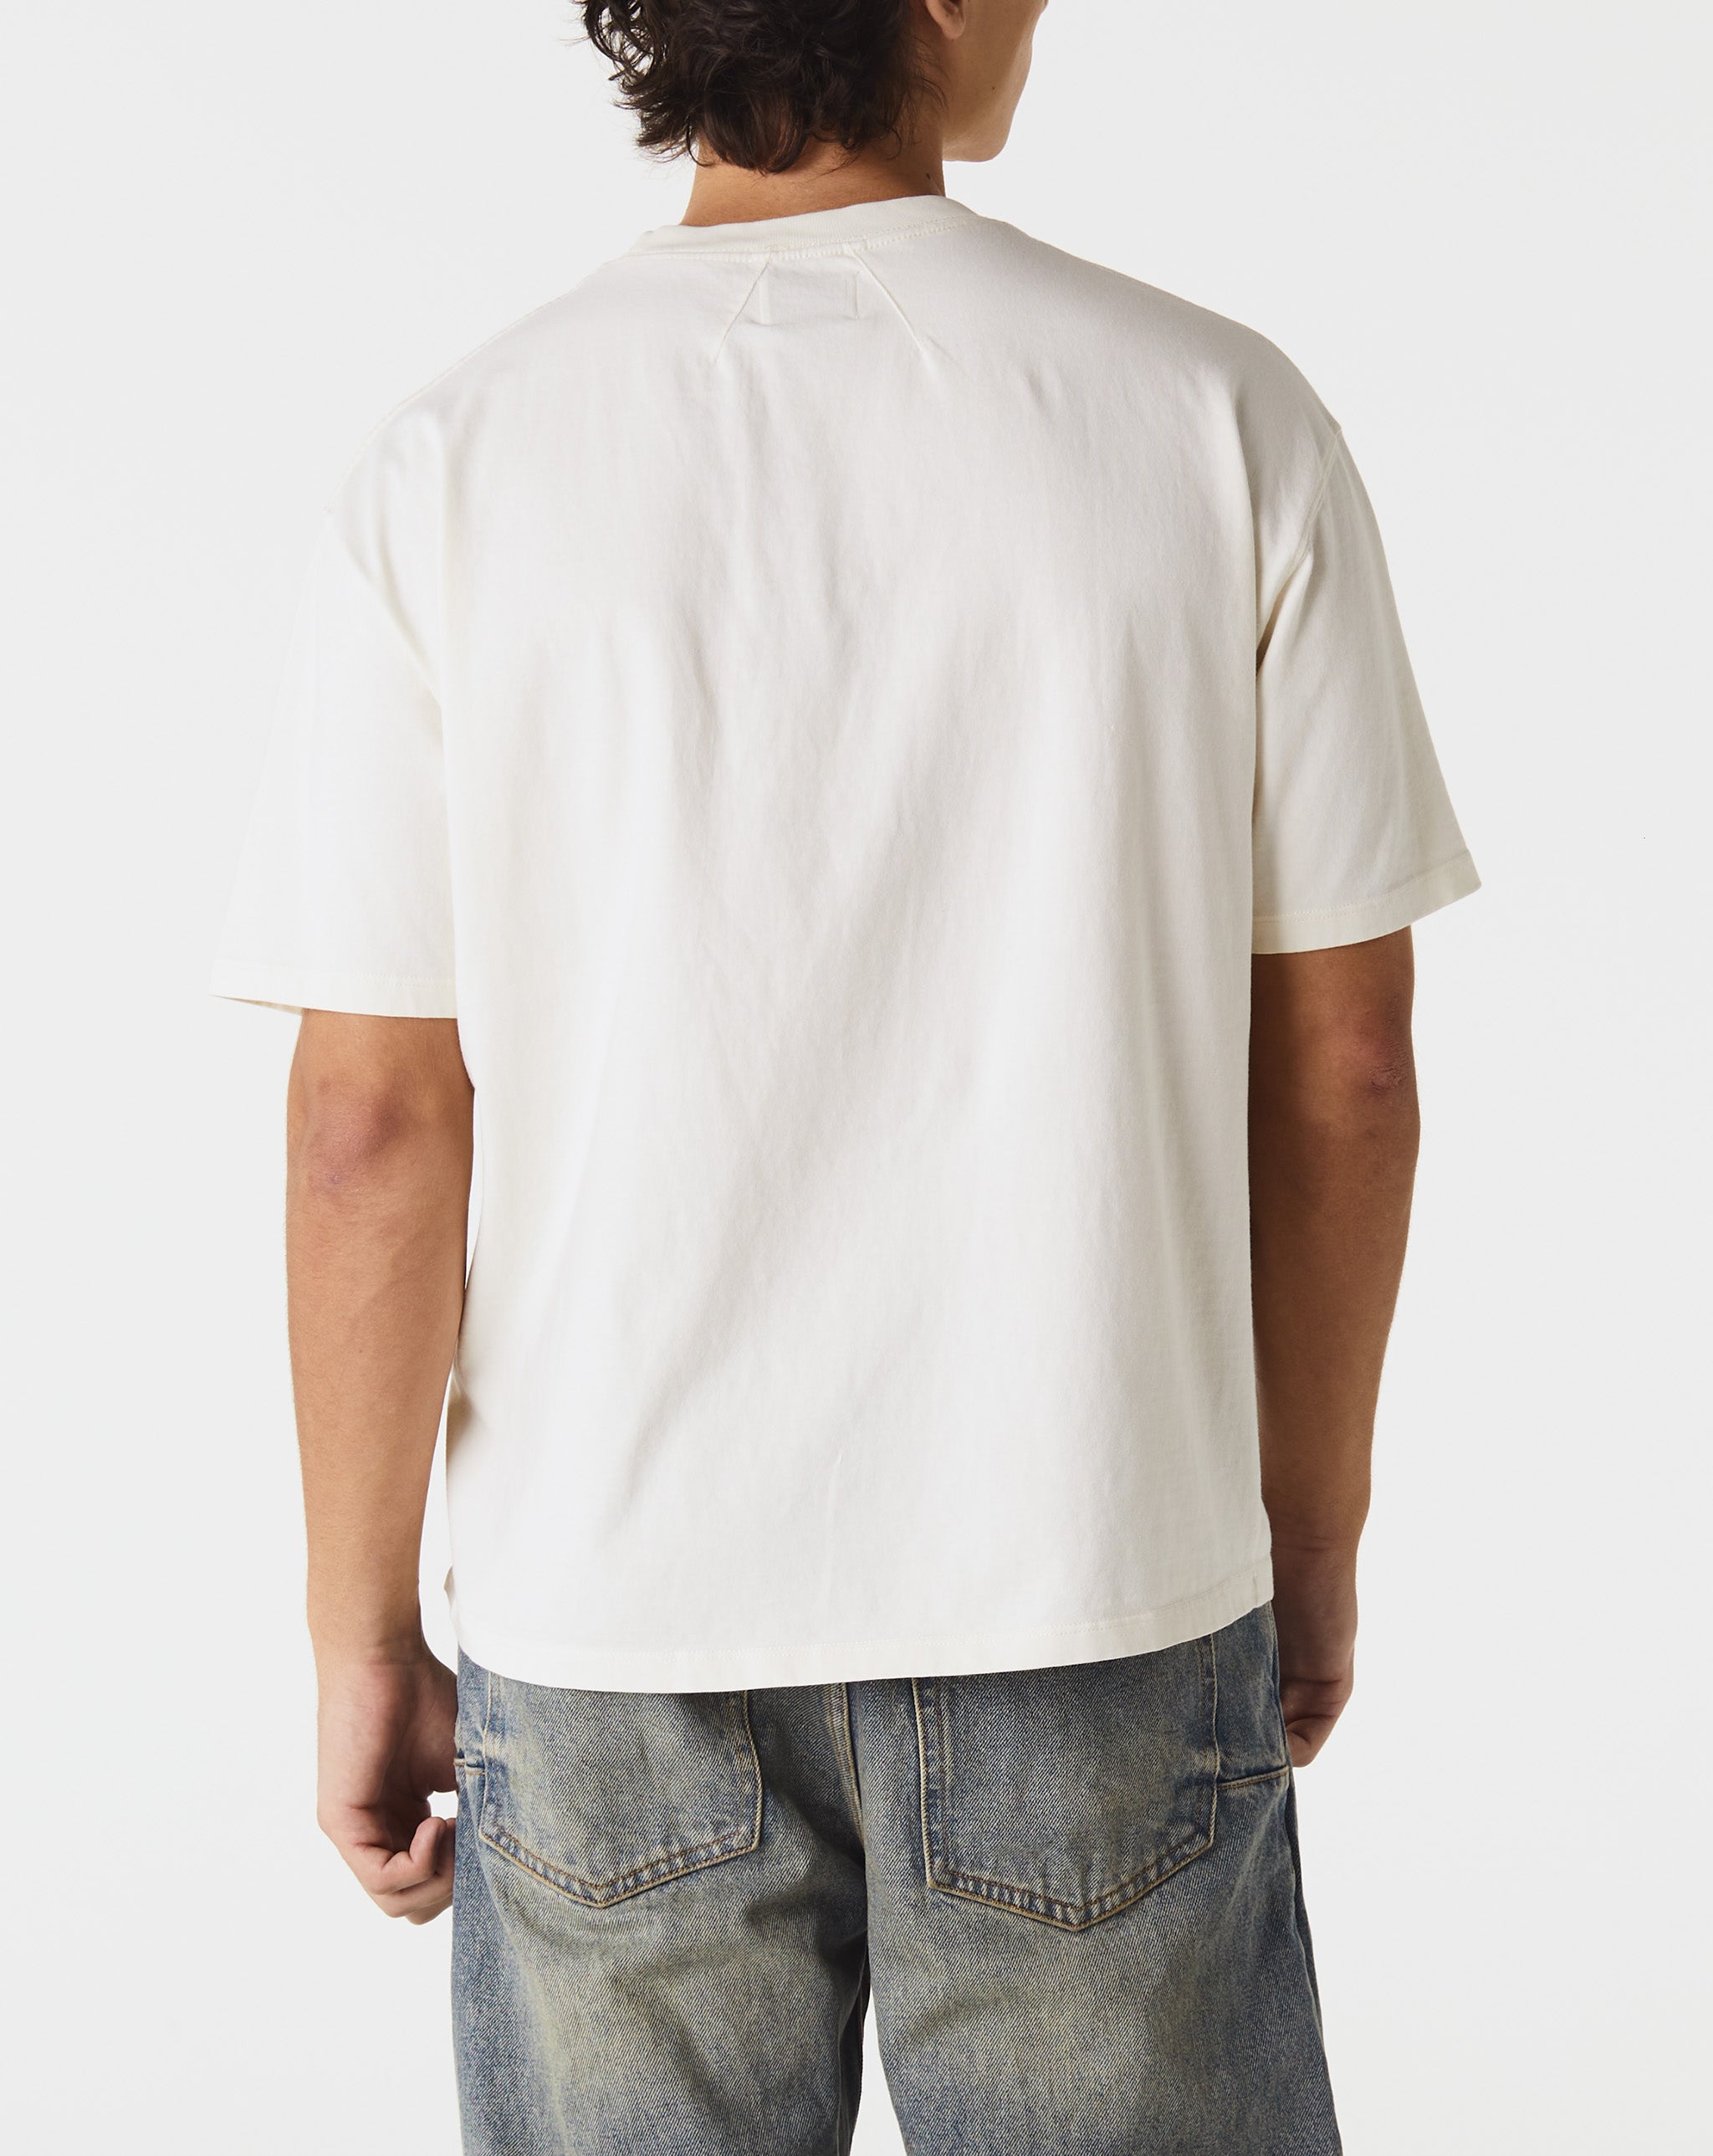 Rhude Cannes Beach T-Shirt  - Cheap 127-0 Jordan outlet